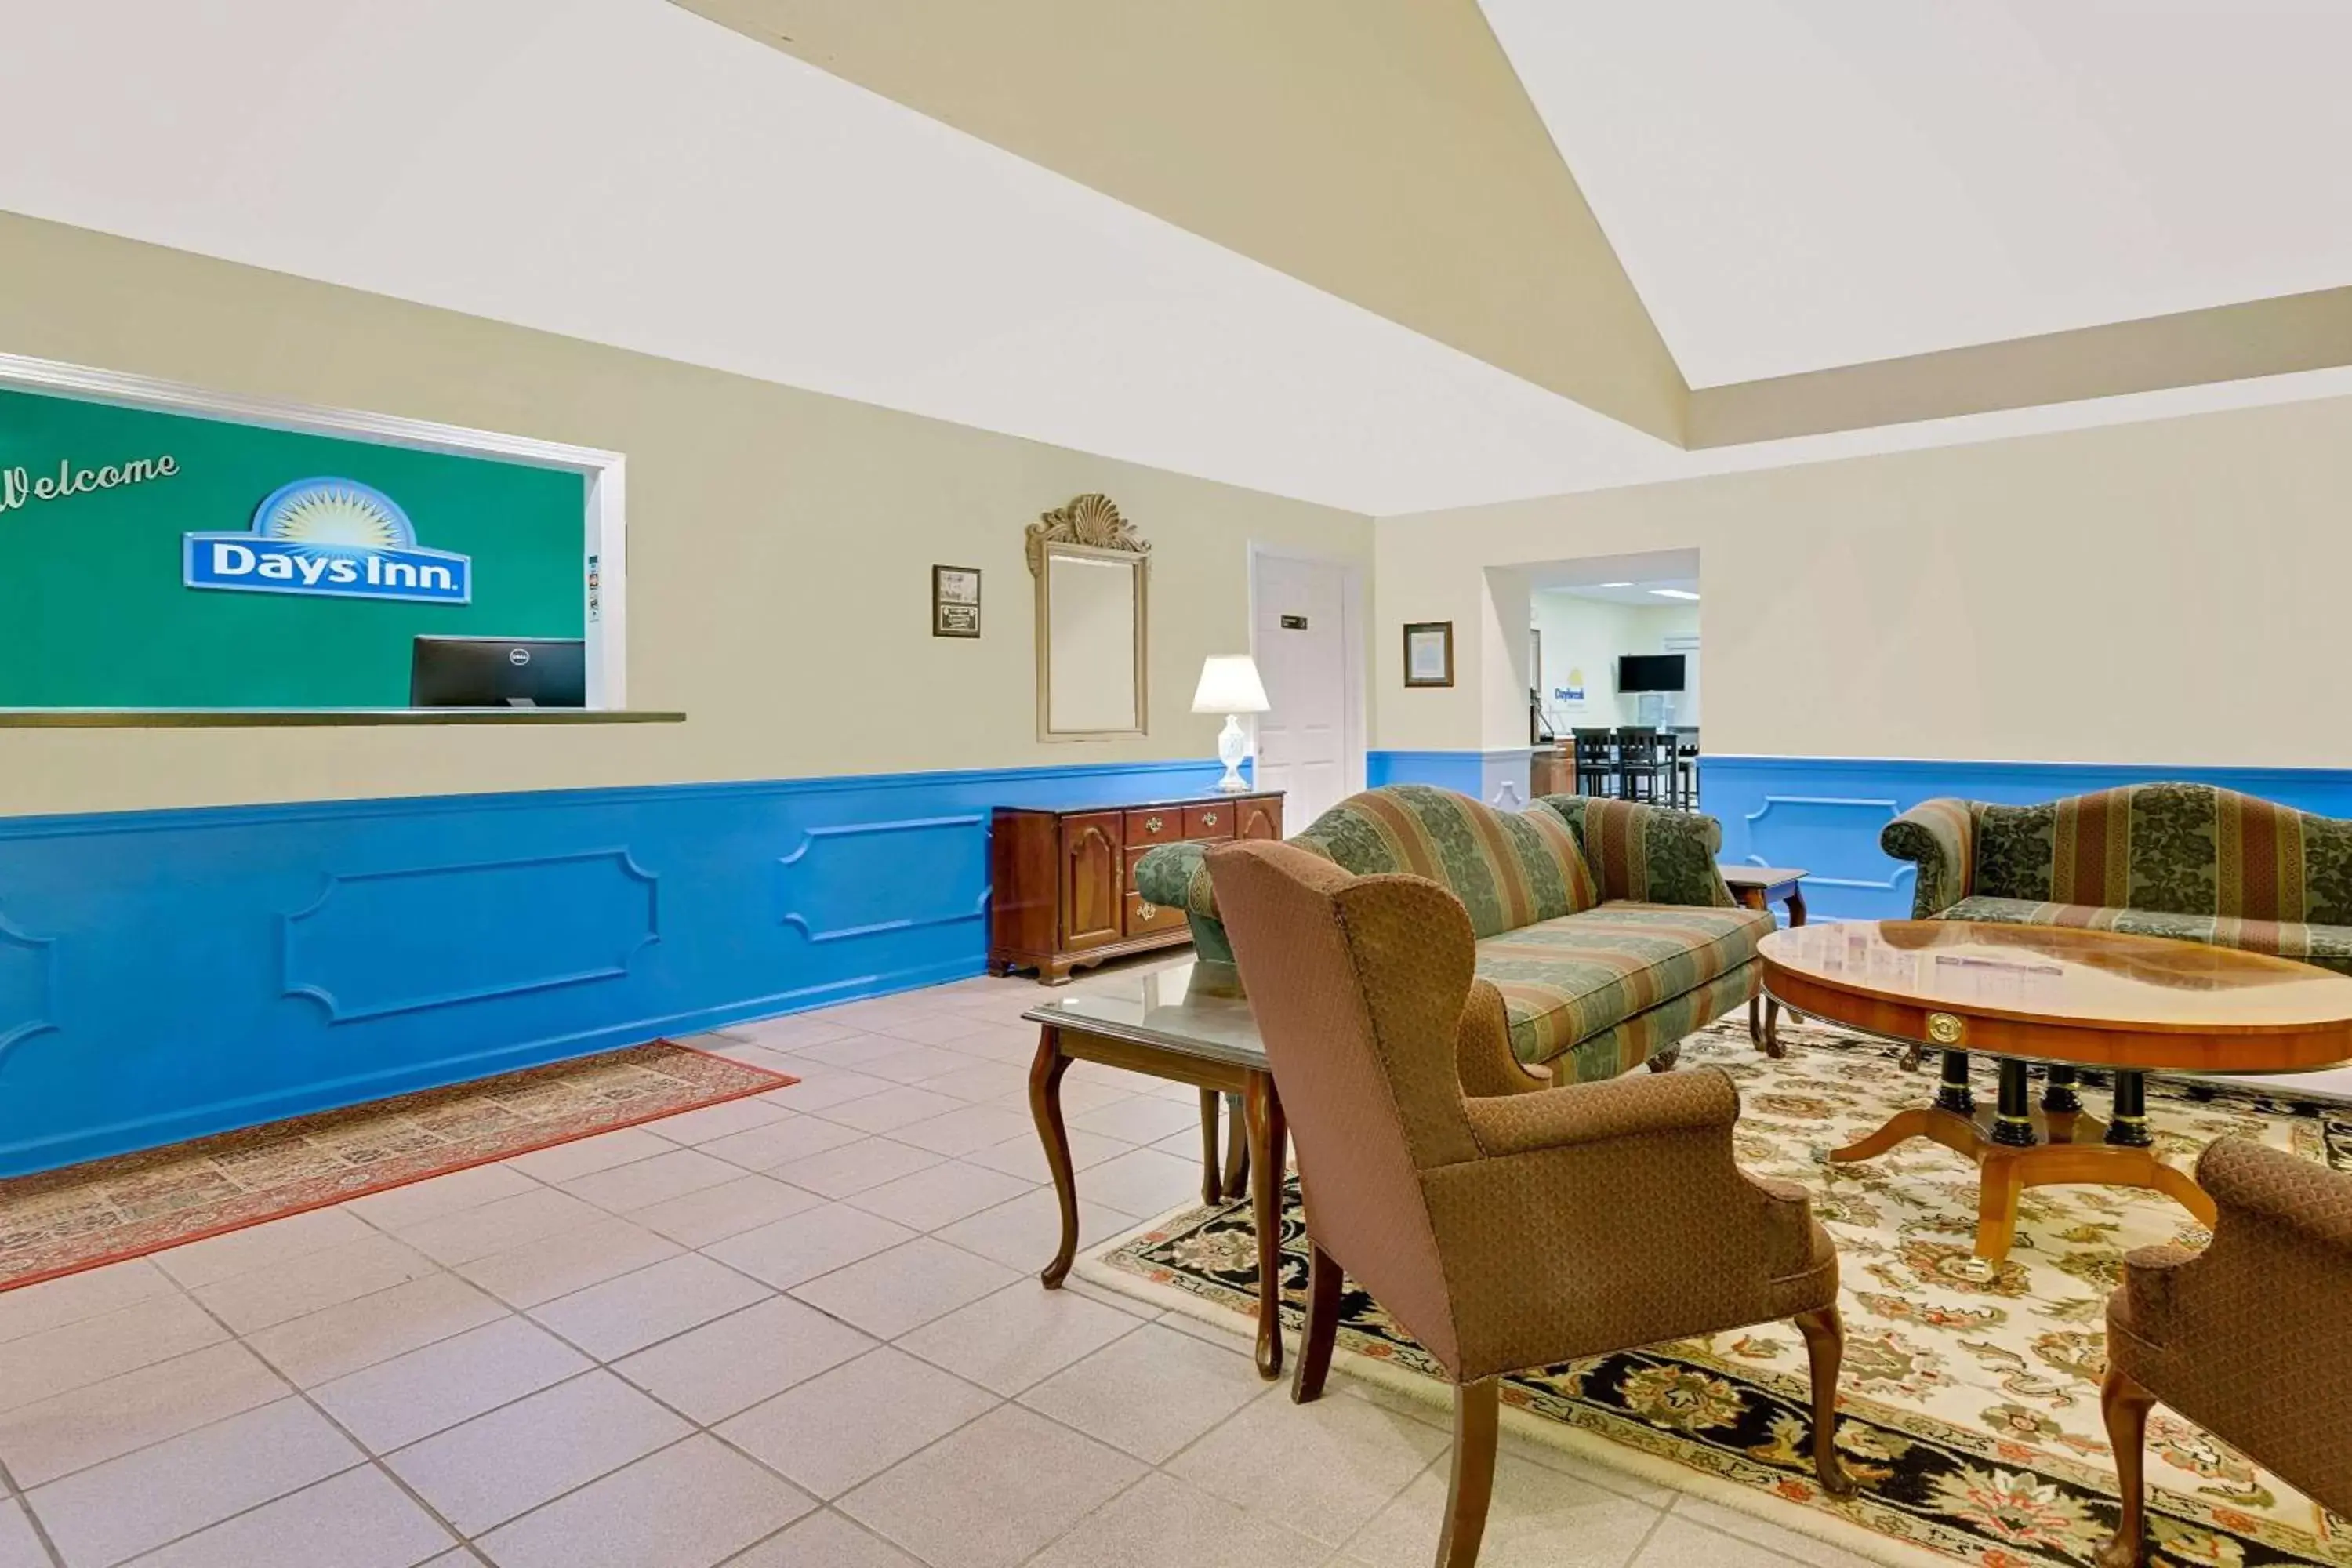 Lobby or reception in Days Inn by Wyndham Spartanburg